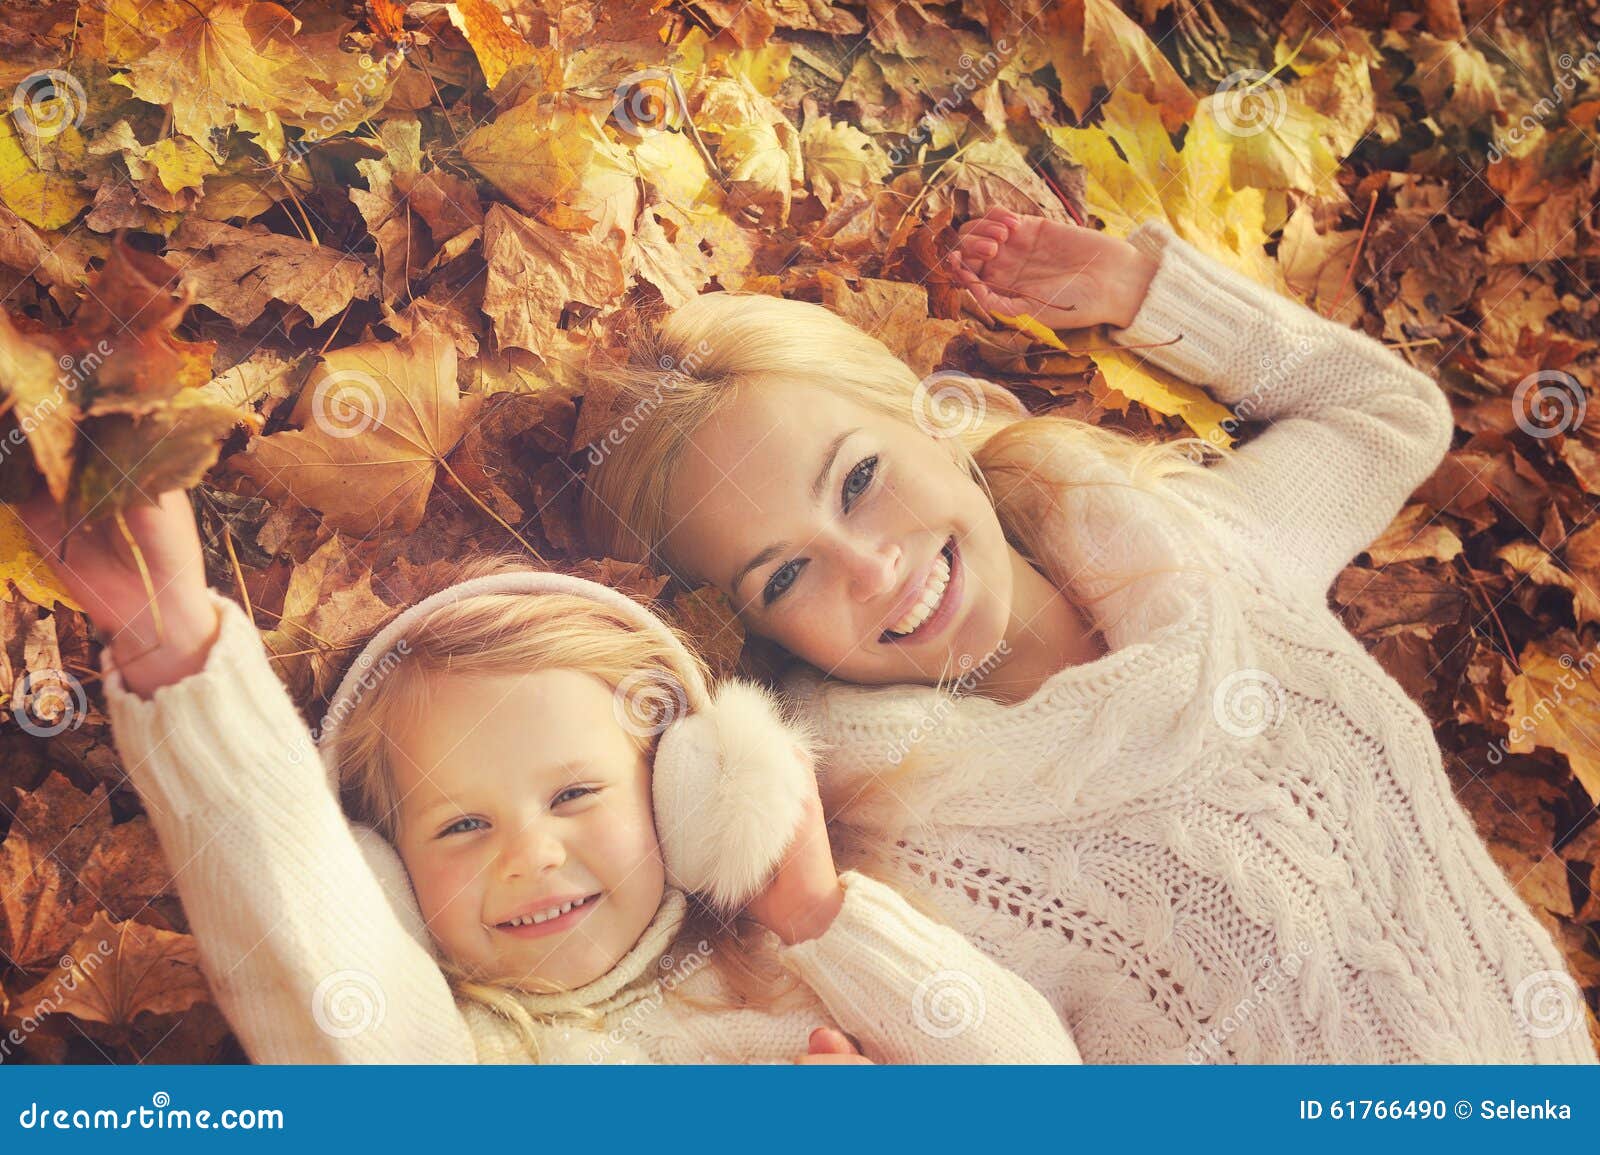 Блондинки мамы видео. Осенняя фотосессия мама с дочкой. Осенняя фотосессия мама и дочь в лесу в свитерах. Фотосессия мама и дочка белые водолазки осень. Счастливая мама осенью.